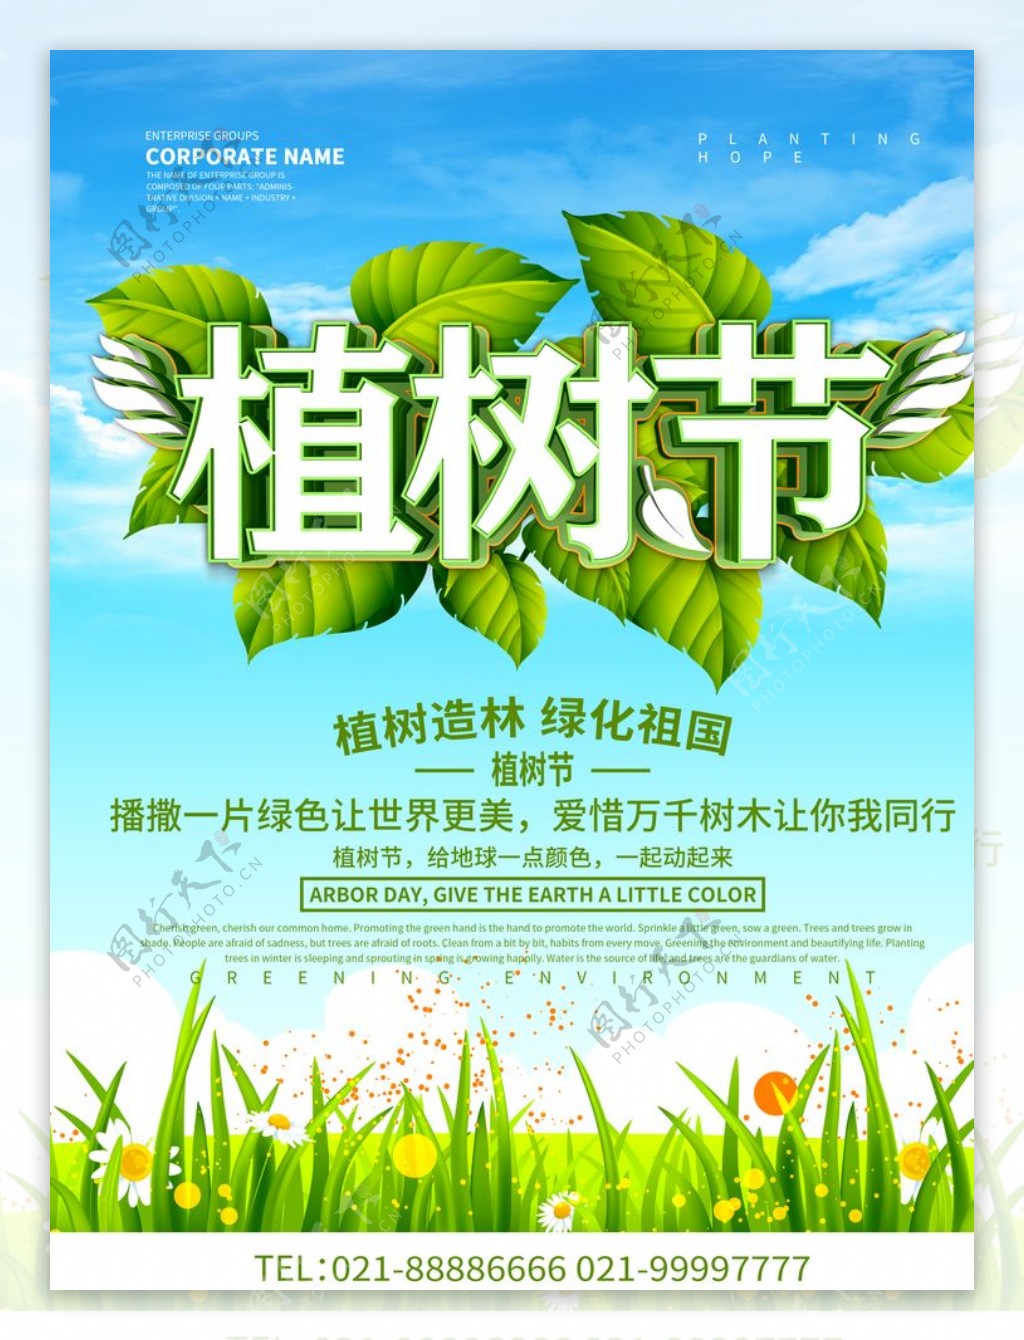 312植树节保护环境宣传海报设